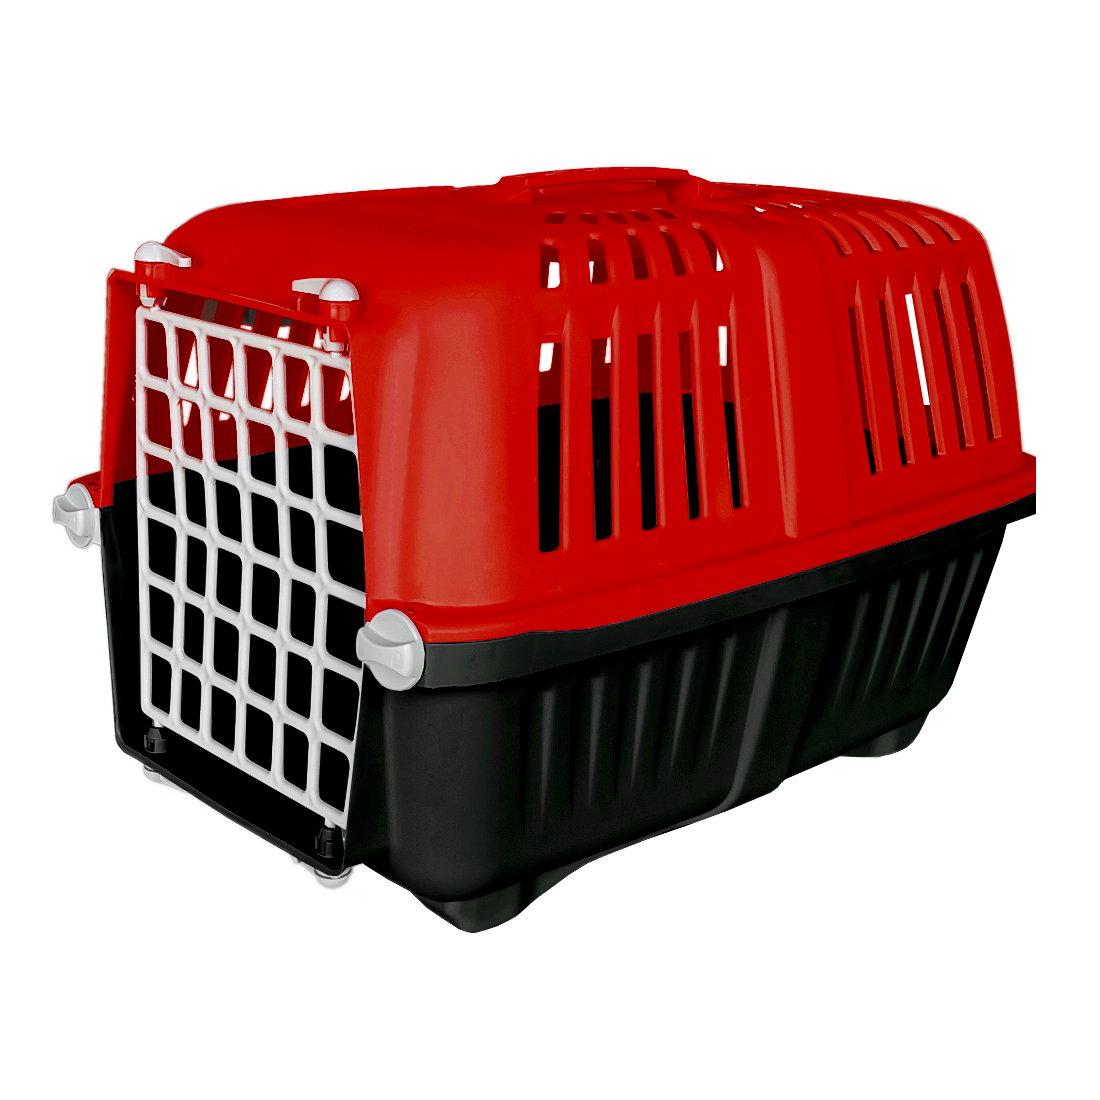 Sert Plastik Kedi Köpek Taşıma Çantası 28 X 44 X 32 cm Kırmızı Gri